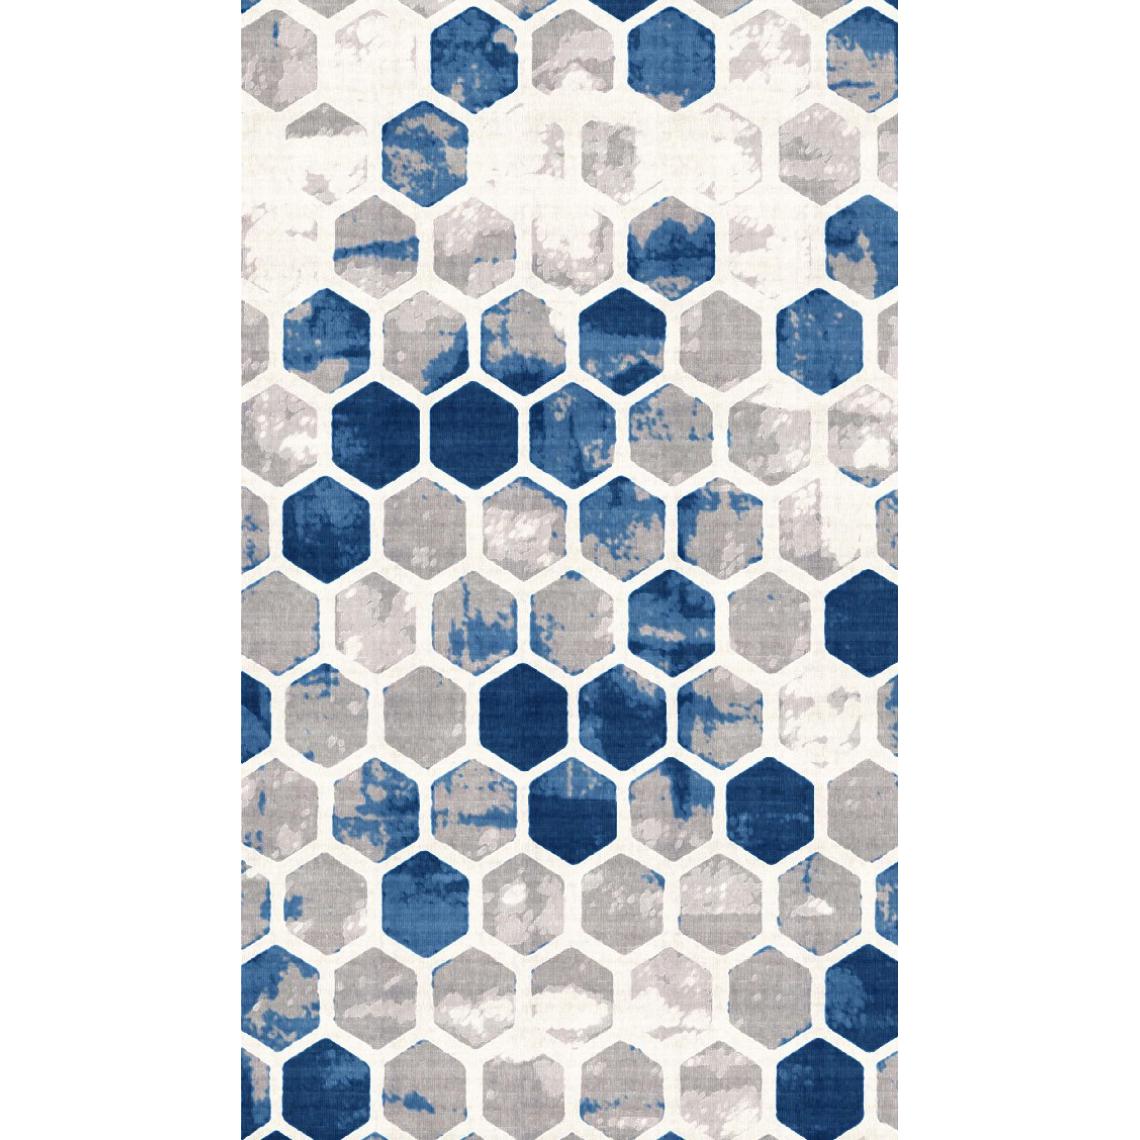 Homemania - HOMEMANIA Tapis Imprimé Hive 1 - Géométrique - Décoration de Maison - Antidérapant - Pour Salon, séjour, chambre à coucher - Multicolore en Polyester, Coton, 60 x 100 cm - Tapis